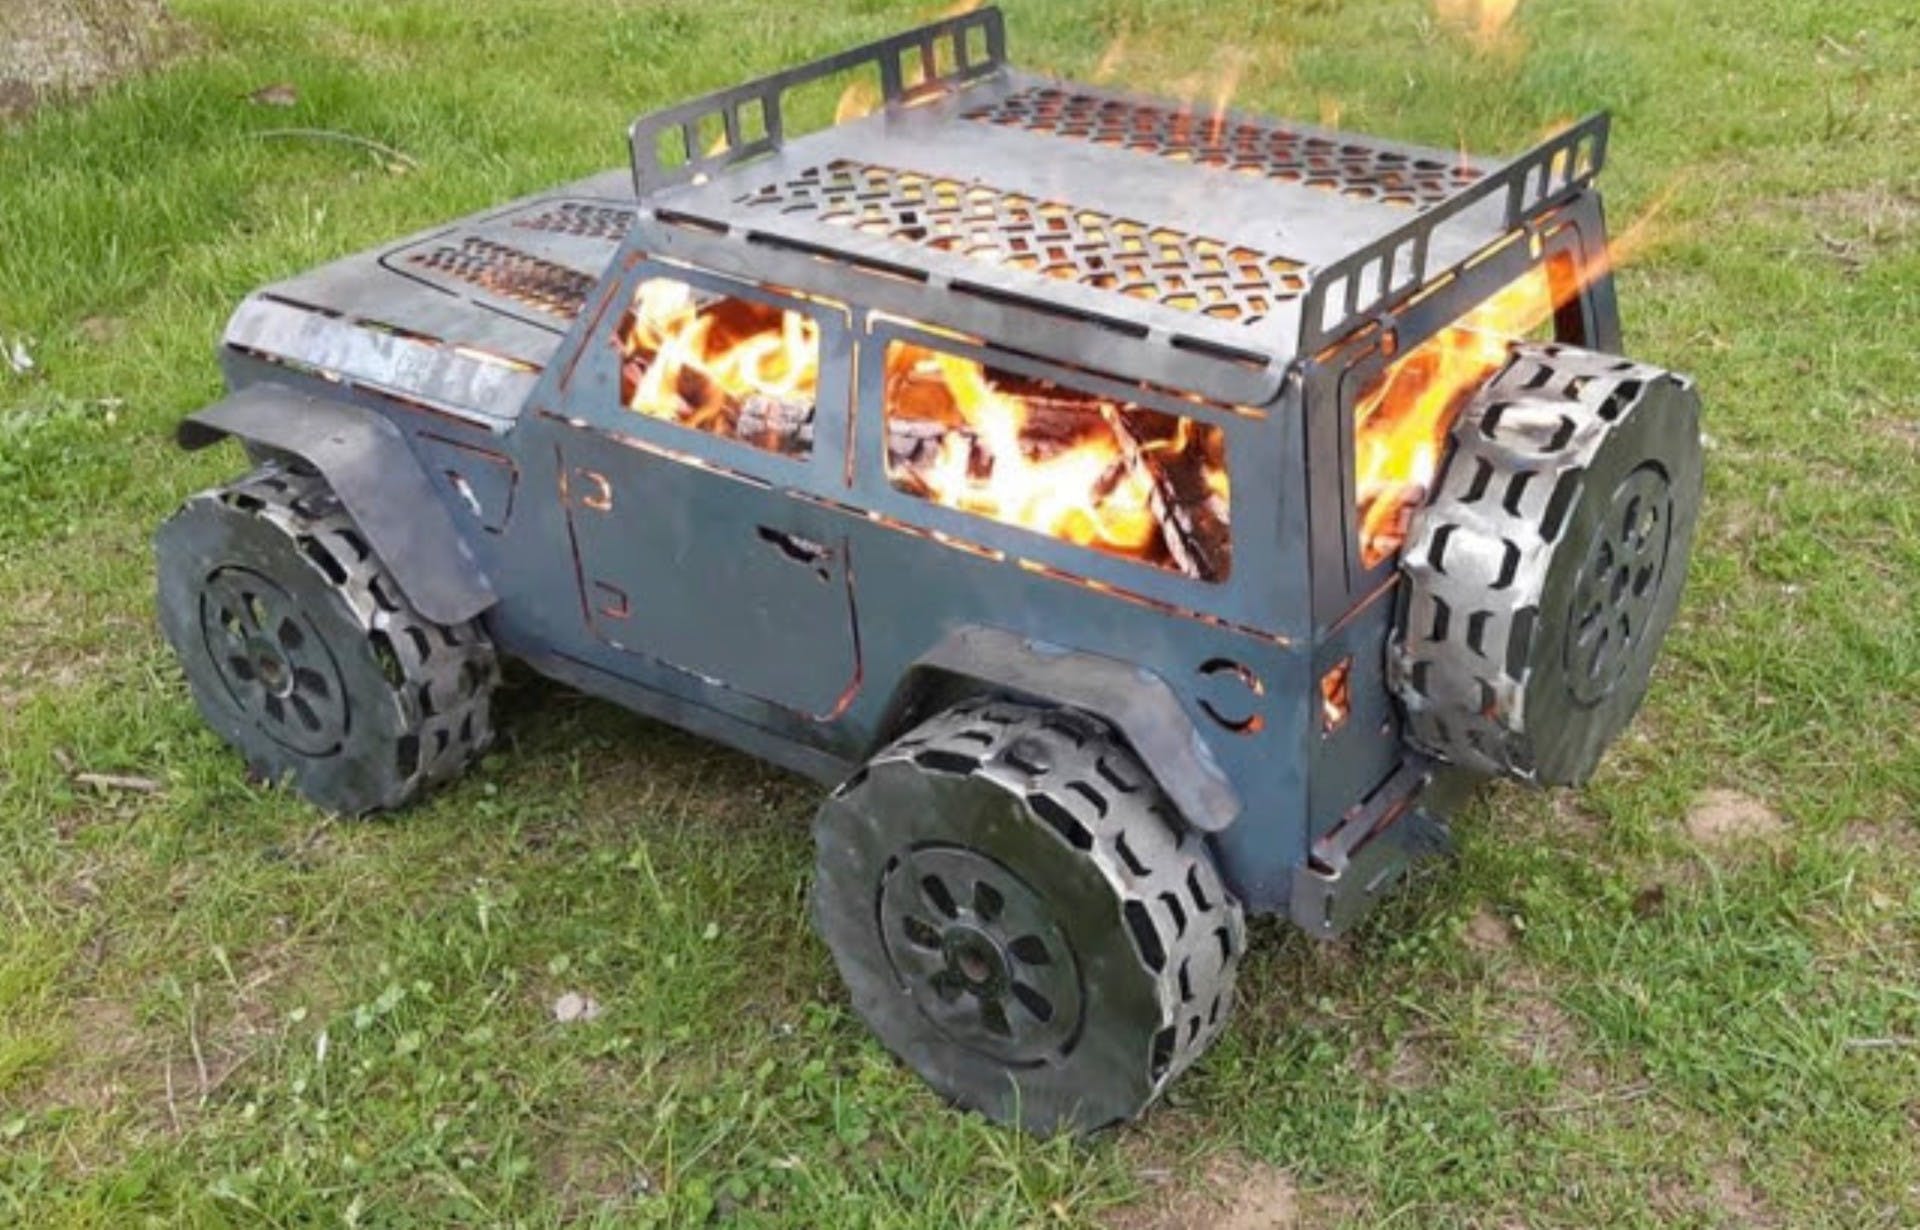 Jeep fire pit